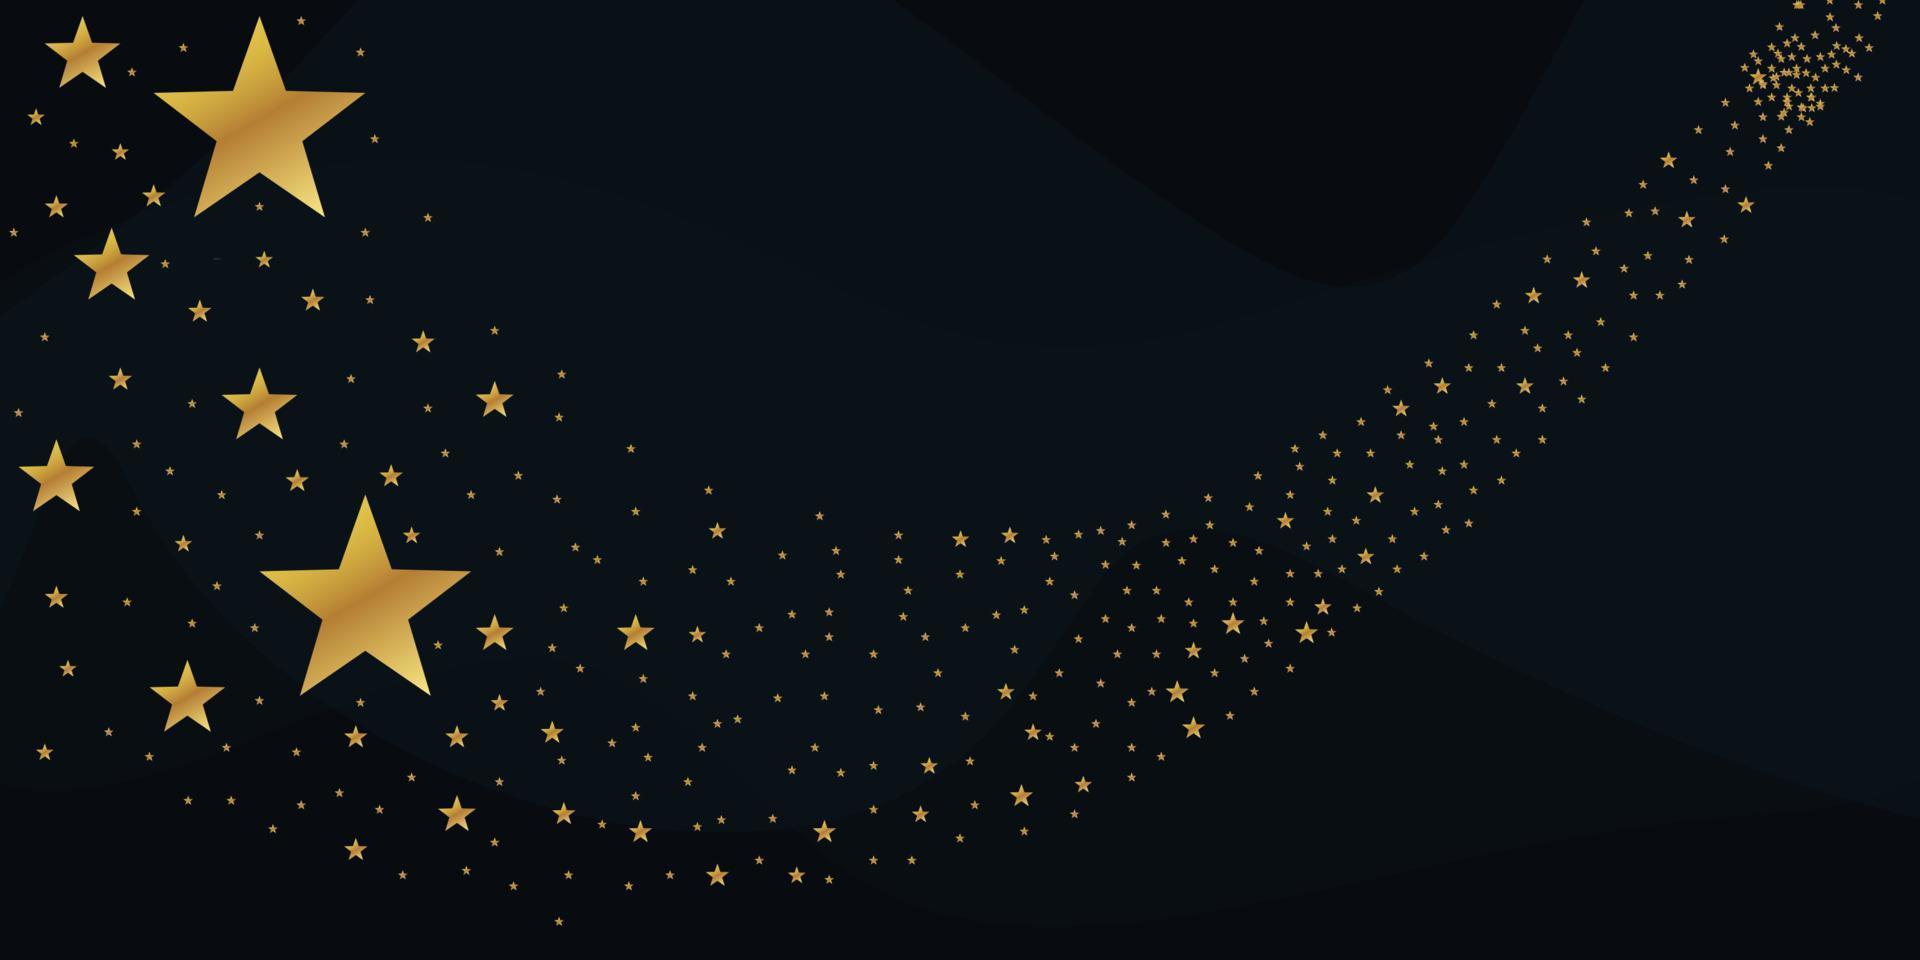 vector de estrella en caída abstracta - estrella fugaz de oro con un elegante rastro de estrellas sobre fondo negro - meteoroide, cometa, asteroide, estrellas